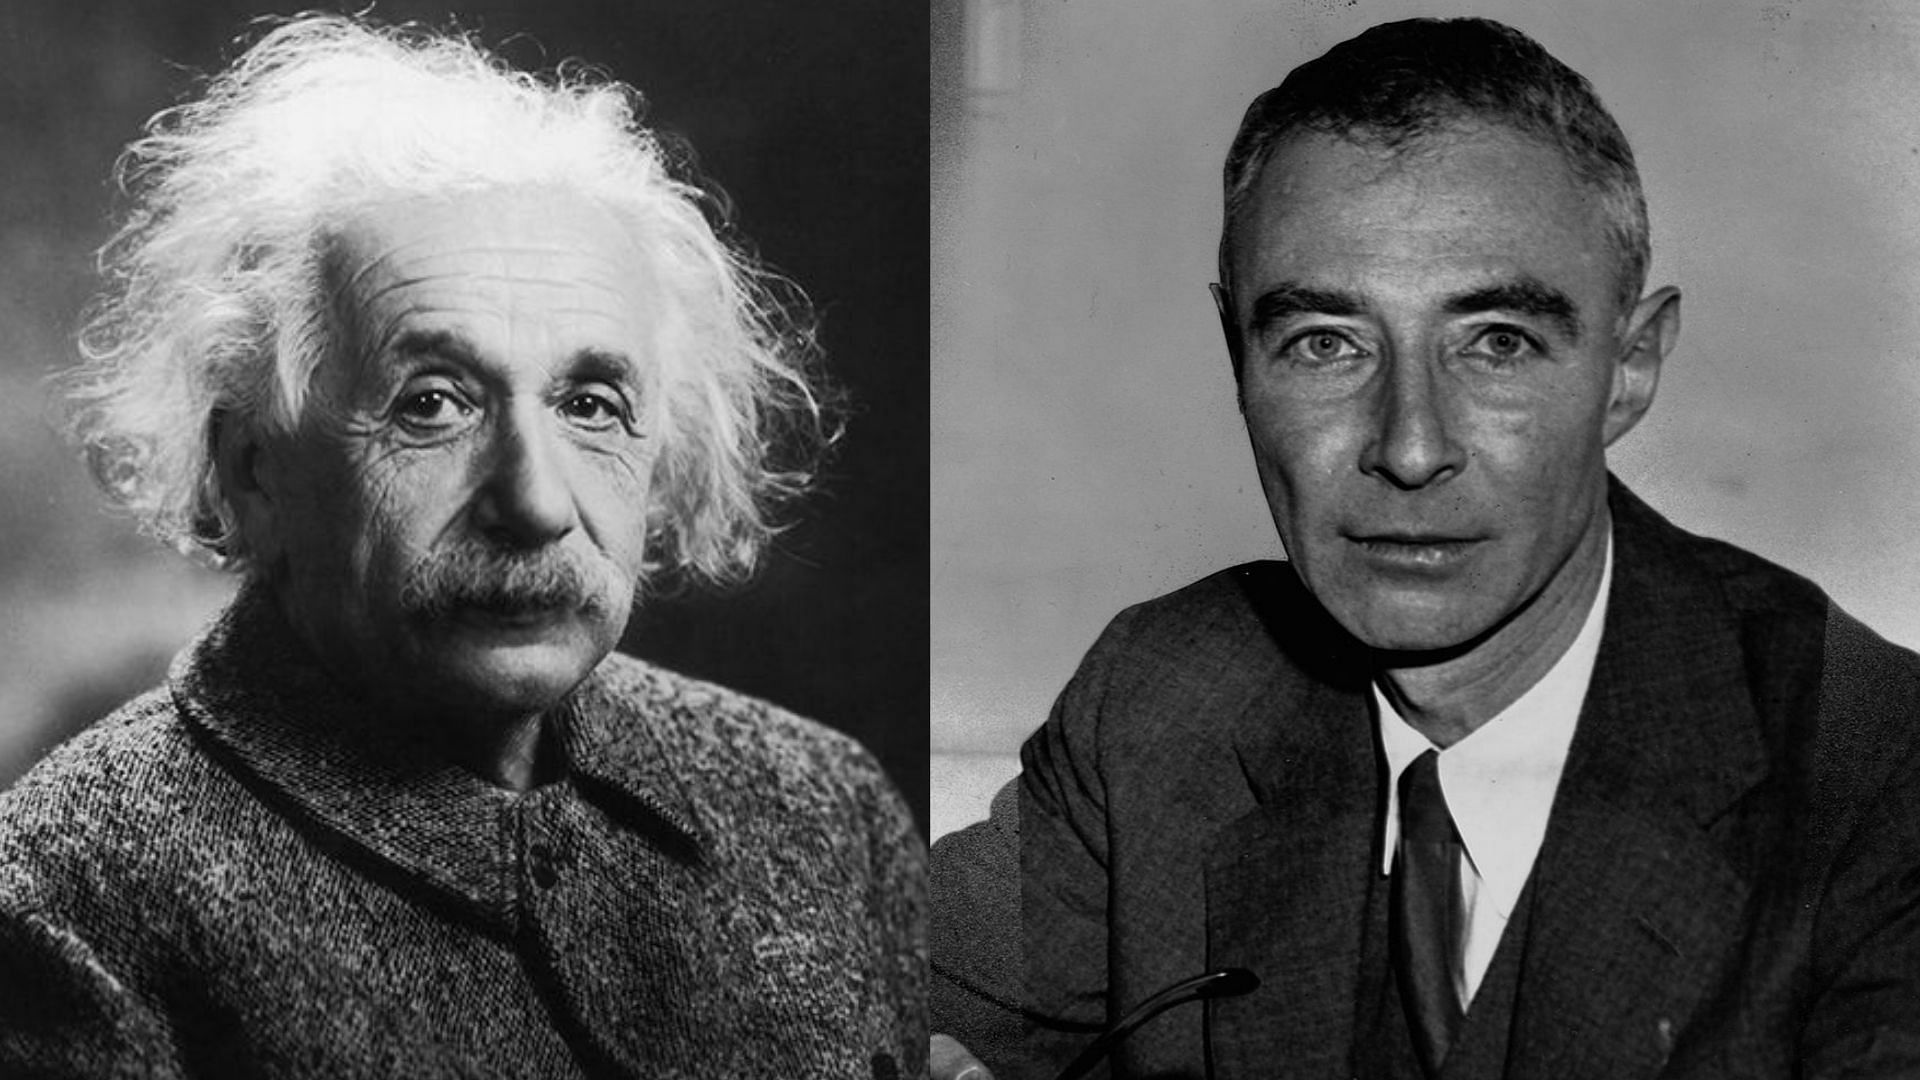 Oppenheimer and Einstein (Image via Sportskeeda)